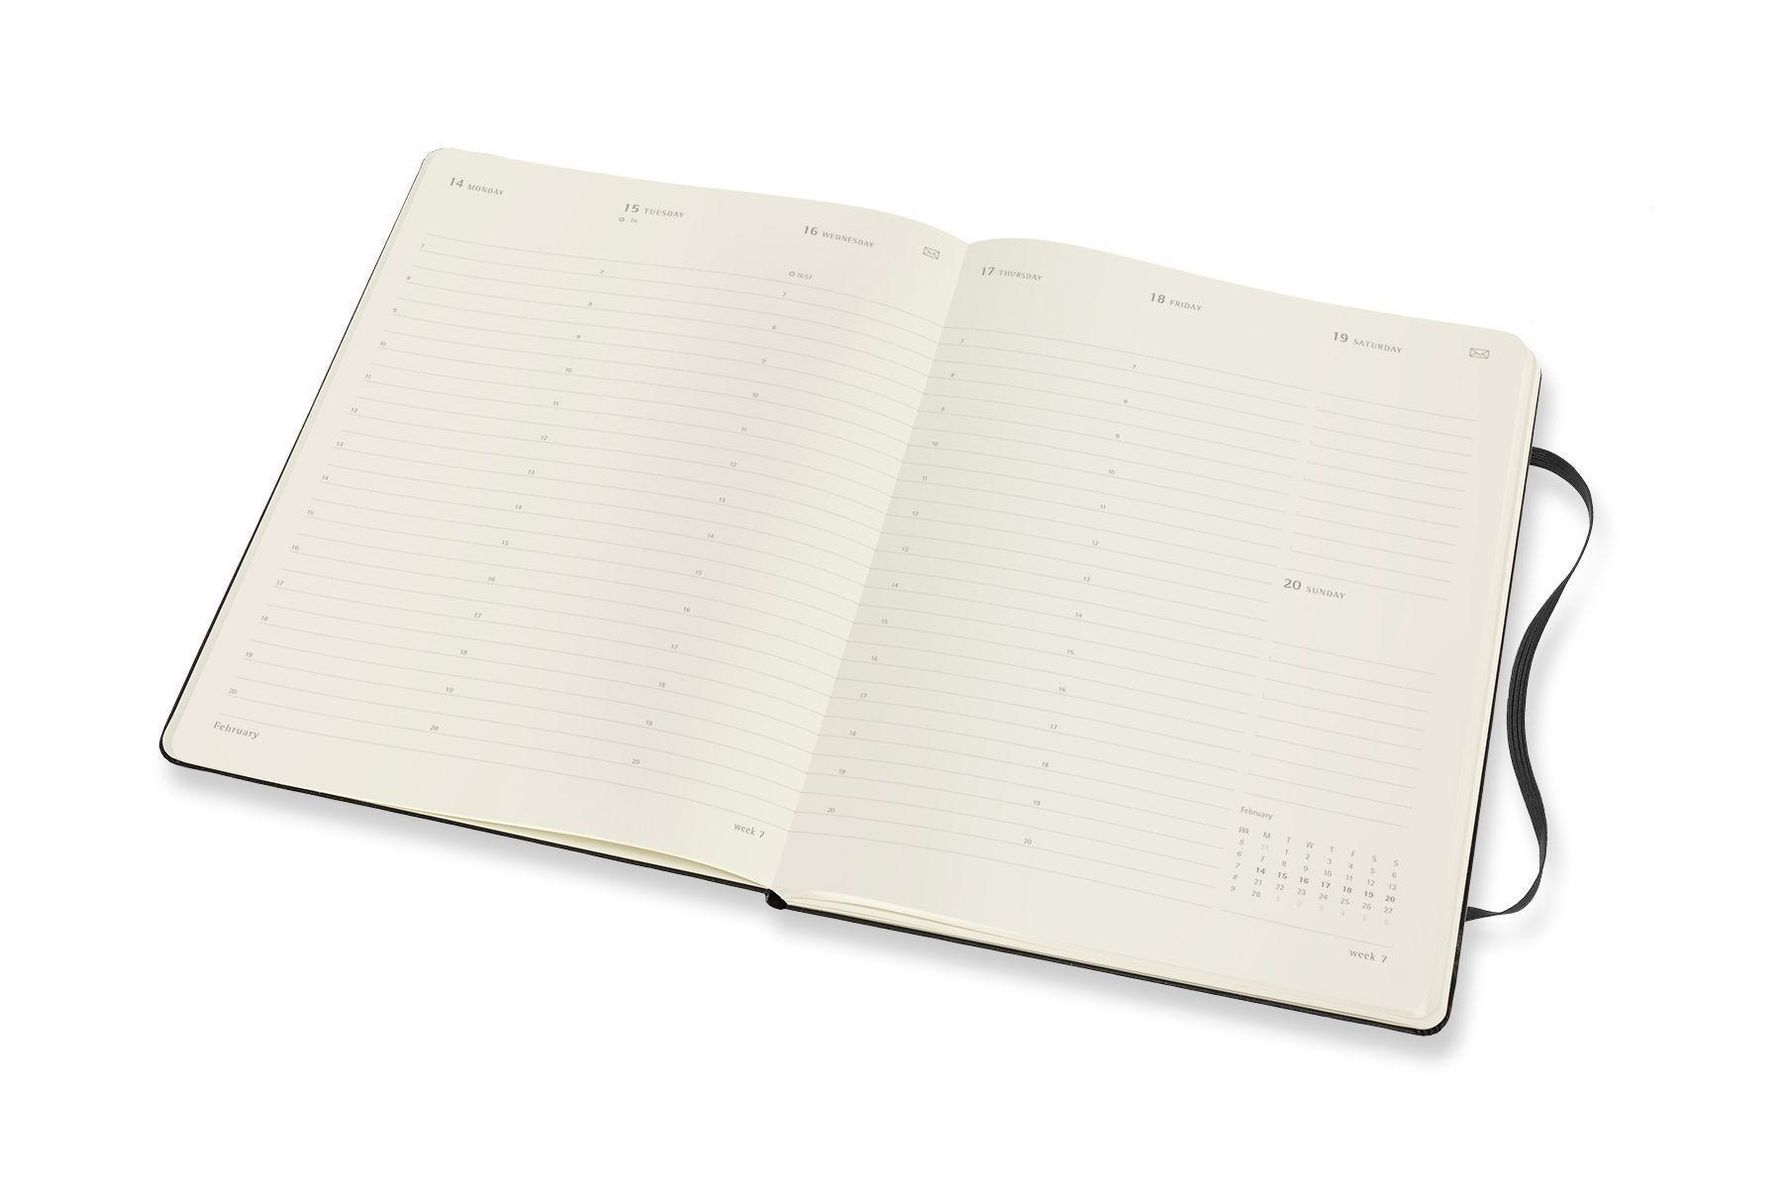 Moleskine Smart Kalender Pro 2021 für das Smart Writing System, Schwarz  Buch versandkostenfrei bei Weltbild.de bestellen